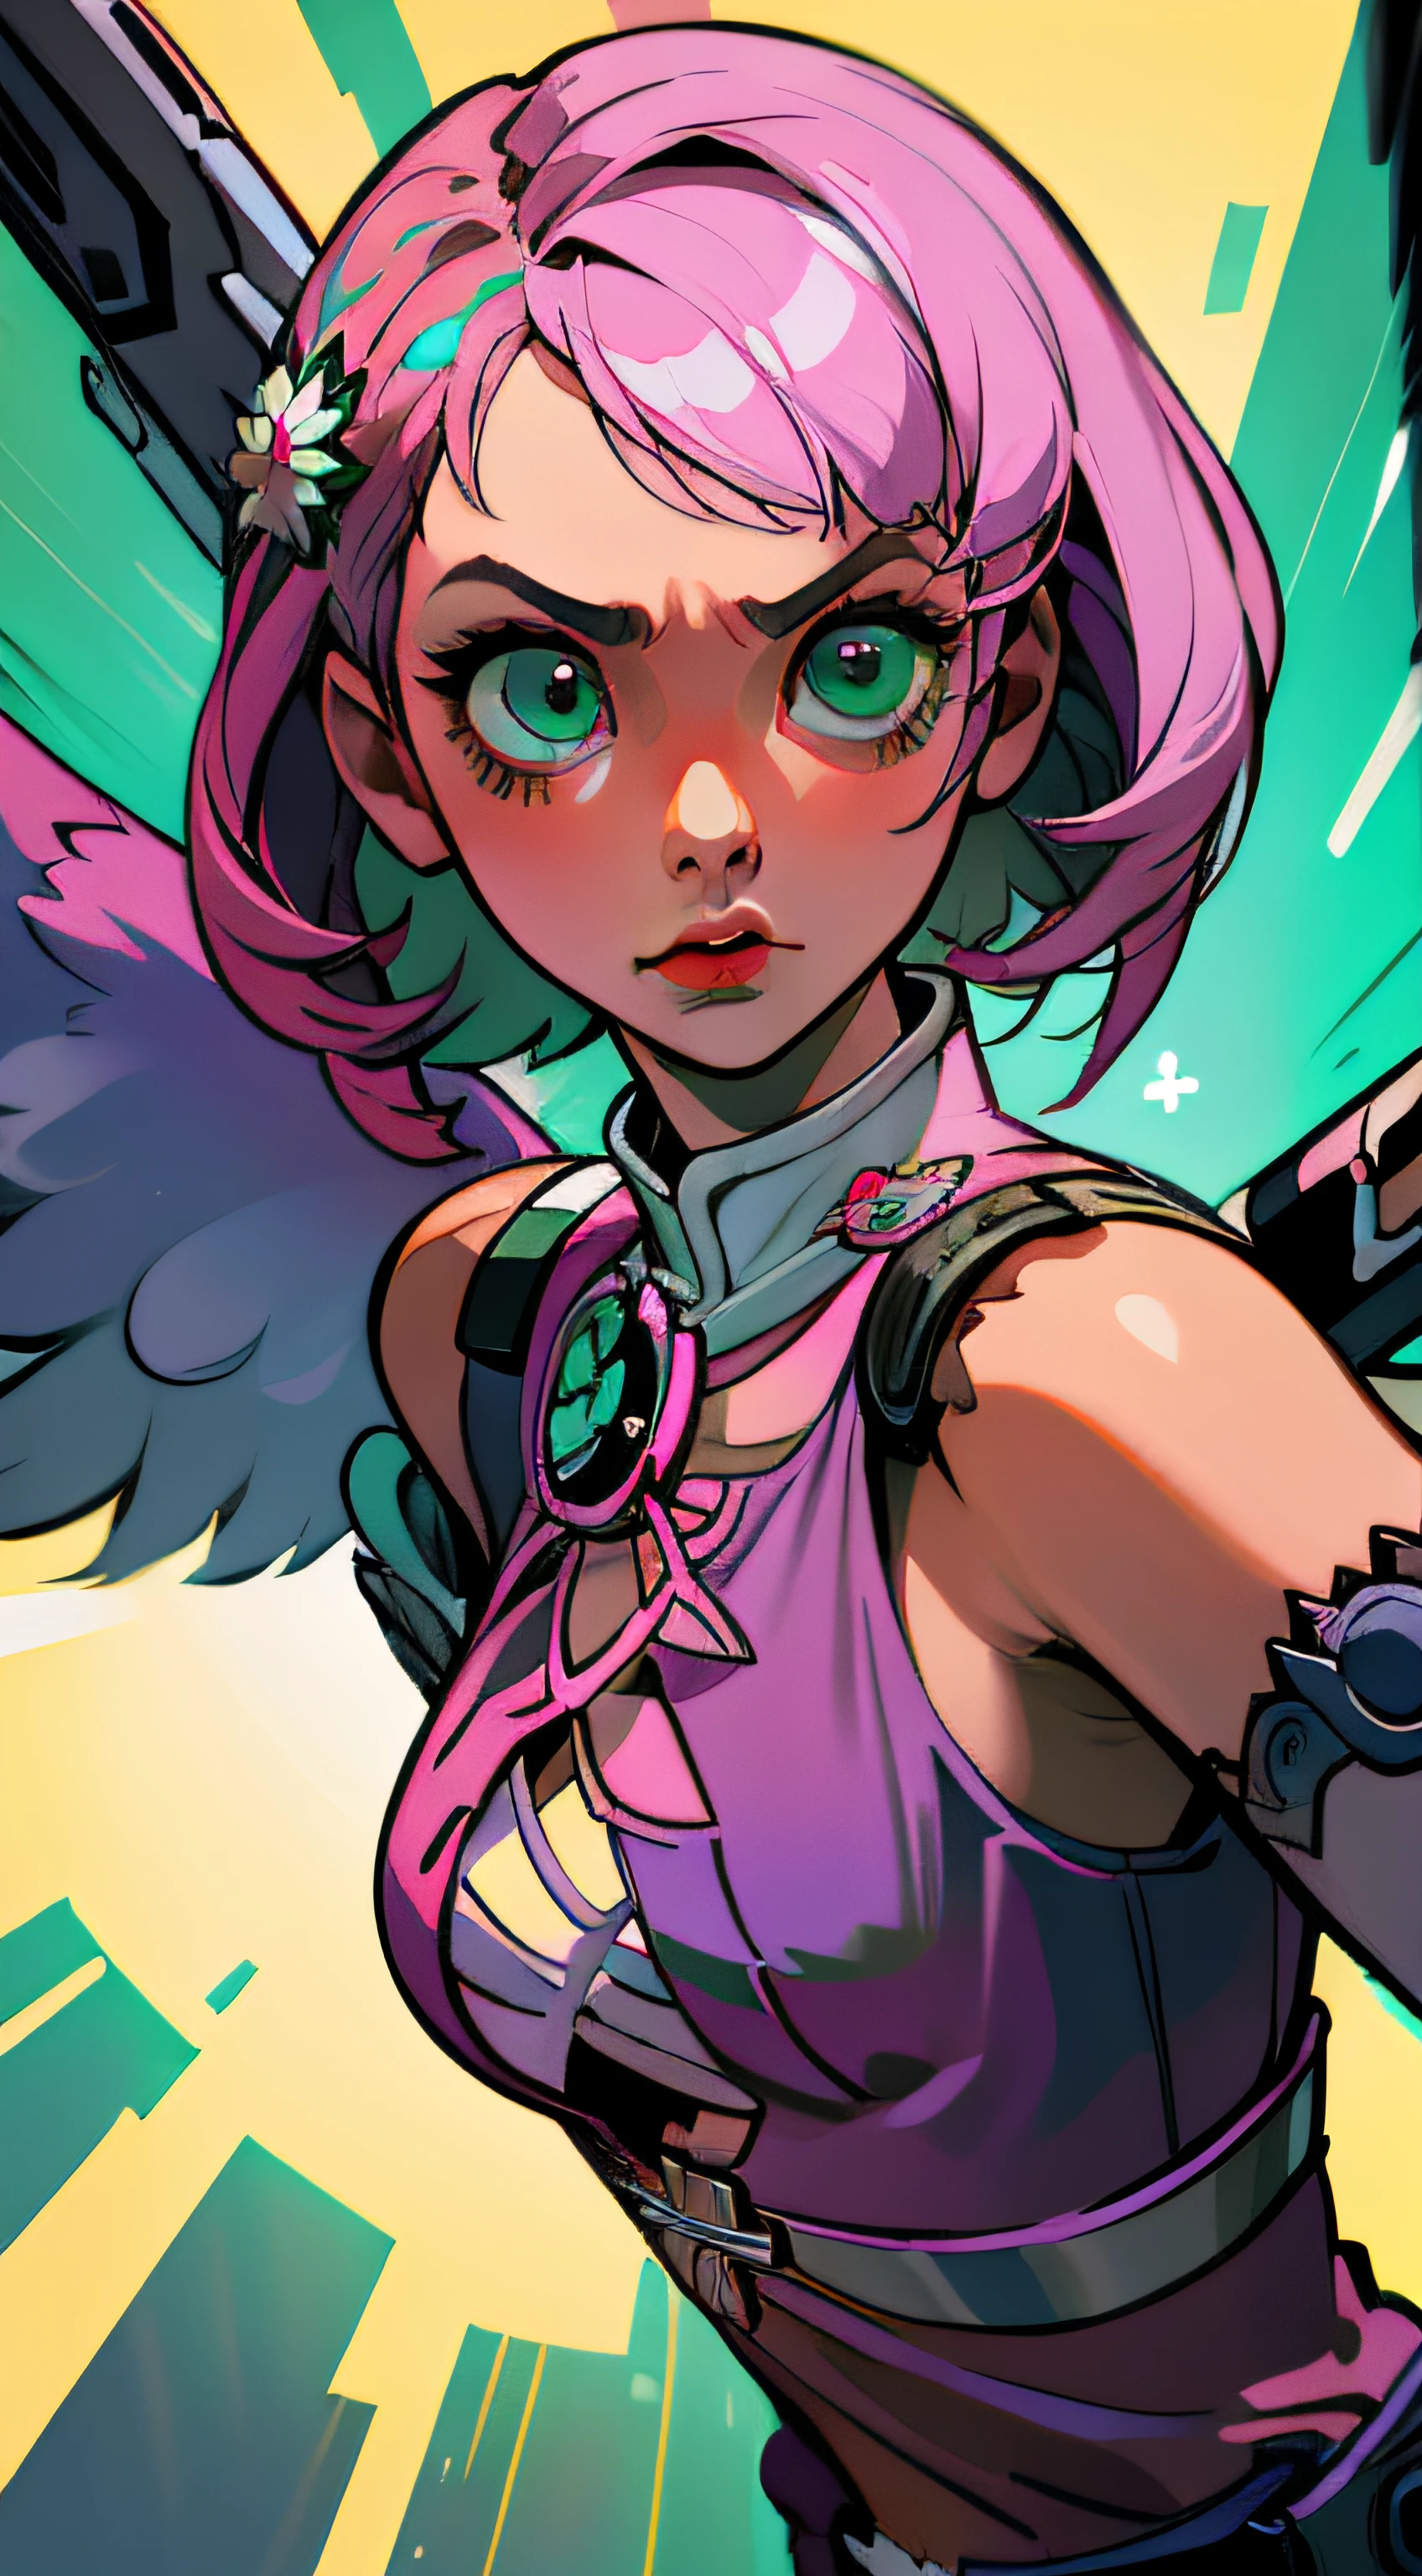 アリサの可愛い顔, 完璧な緑色の対称的な目, マルチカラーのピンクのショートヘア, 機械の翼, 鉄拳